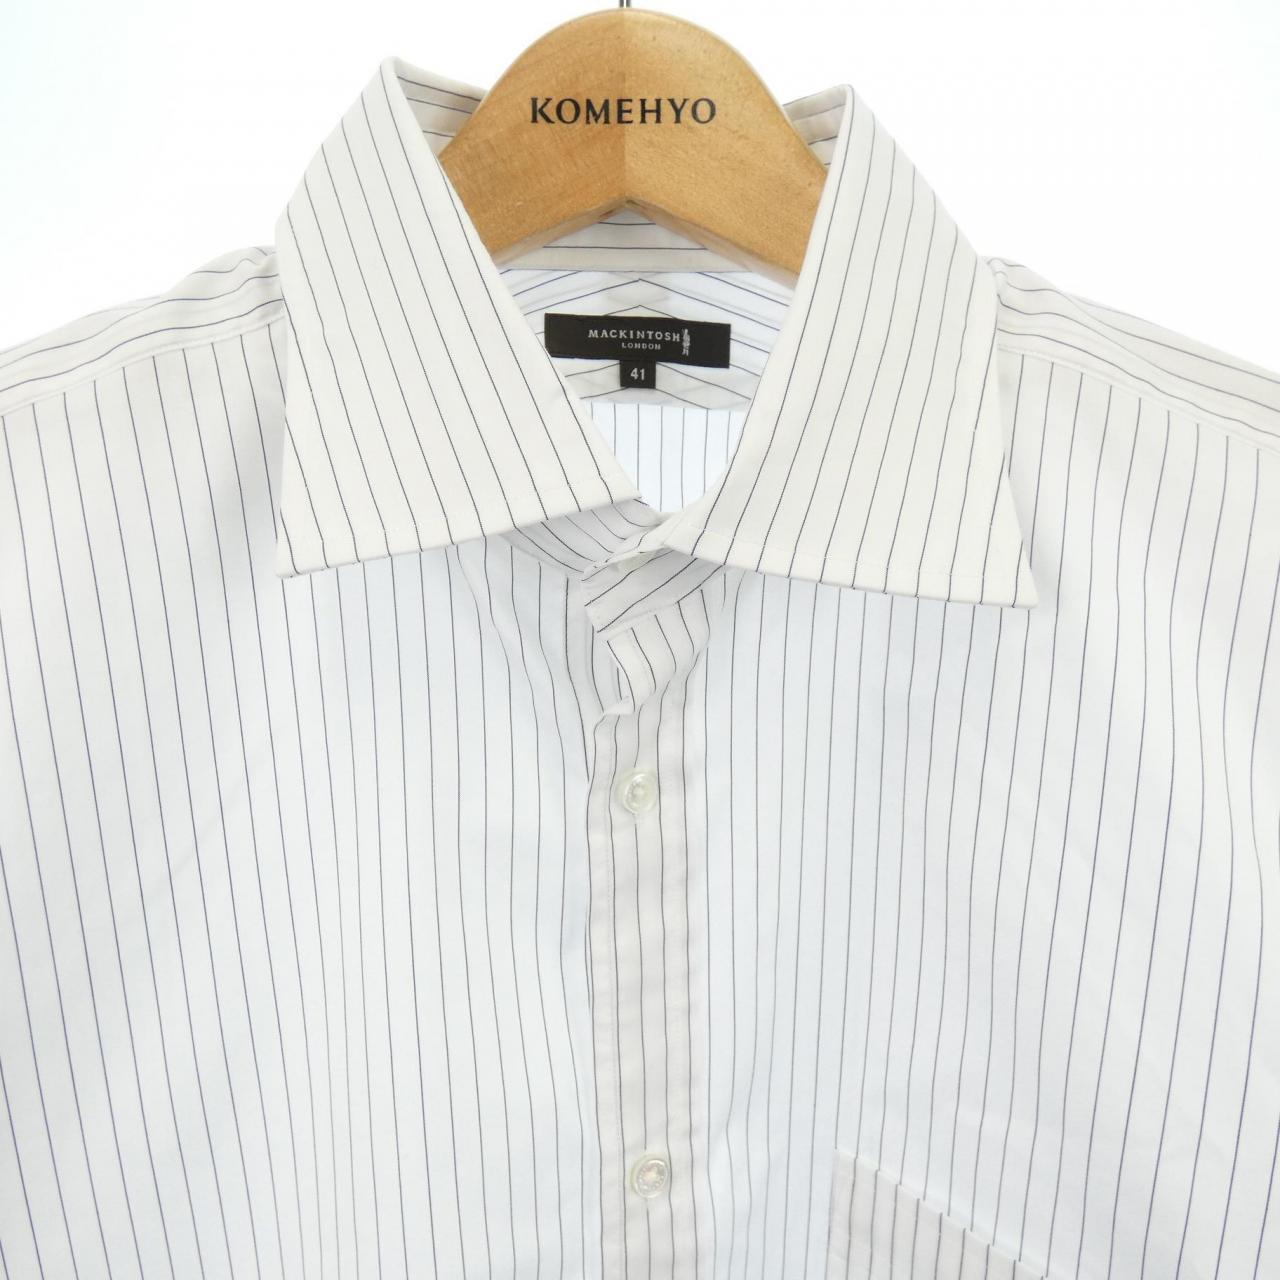 マッキントッシュロンドン 高級ぼかしチェック柄半袖シャツ 25,300円 